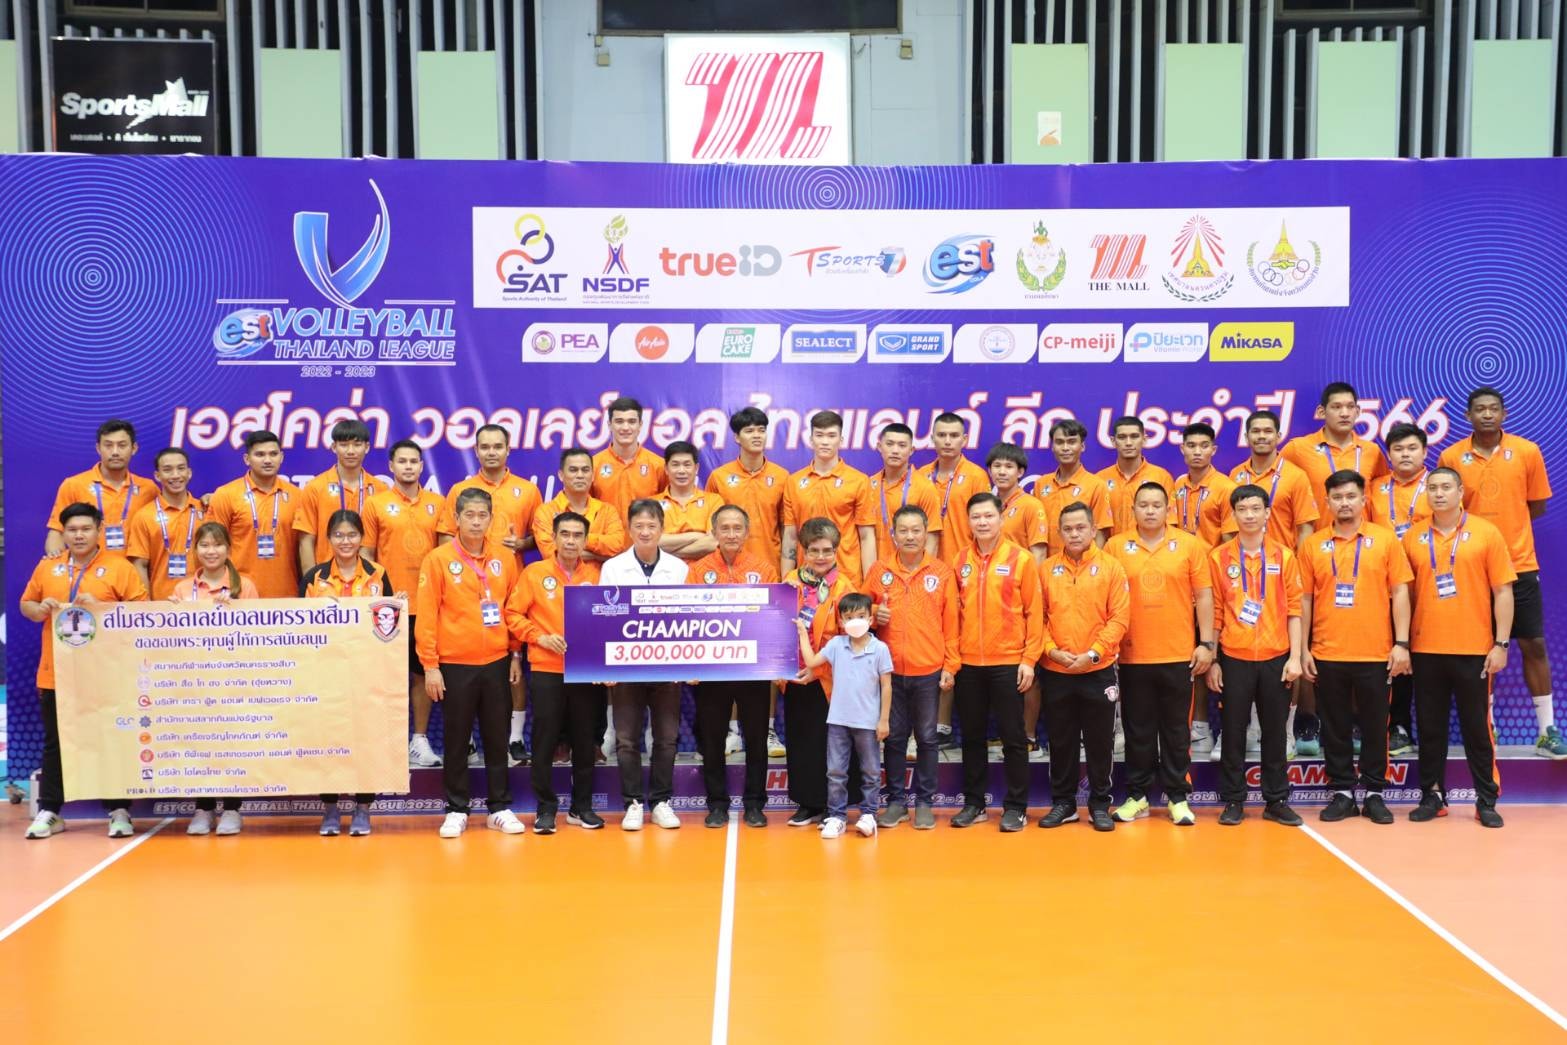 นายทนุเกียรติ จันทร์ชุม รองผู้ว่าการ การกีฬาแห่งประเทศไทย ฝ่ายกีฬาอาชีพและกีฬามวย เข้าร่วมชมการแข่งขันและมอบรางวัล การแข่งขันวอลเลย์บอลอาชีพ รายการ  “เอสโคล่า” วอลเลย์บอลอาชีพไทยแลนด์ลีก ประจำปี 2566 – ข่าวกีฬา